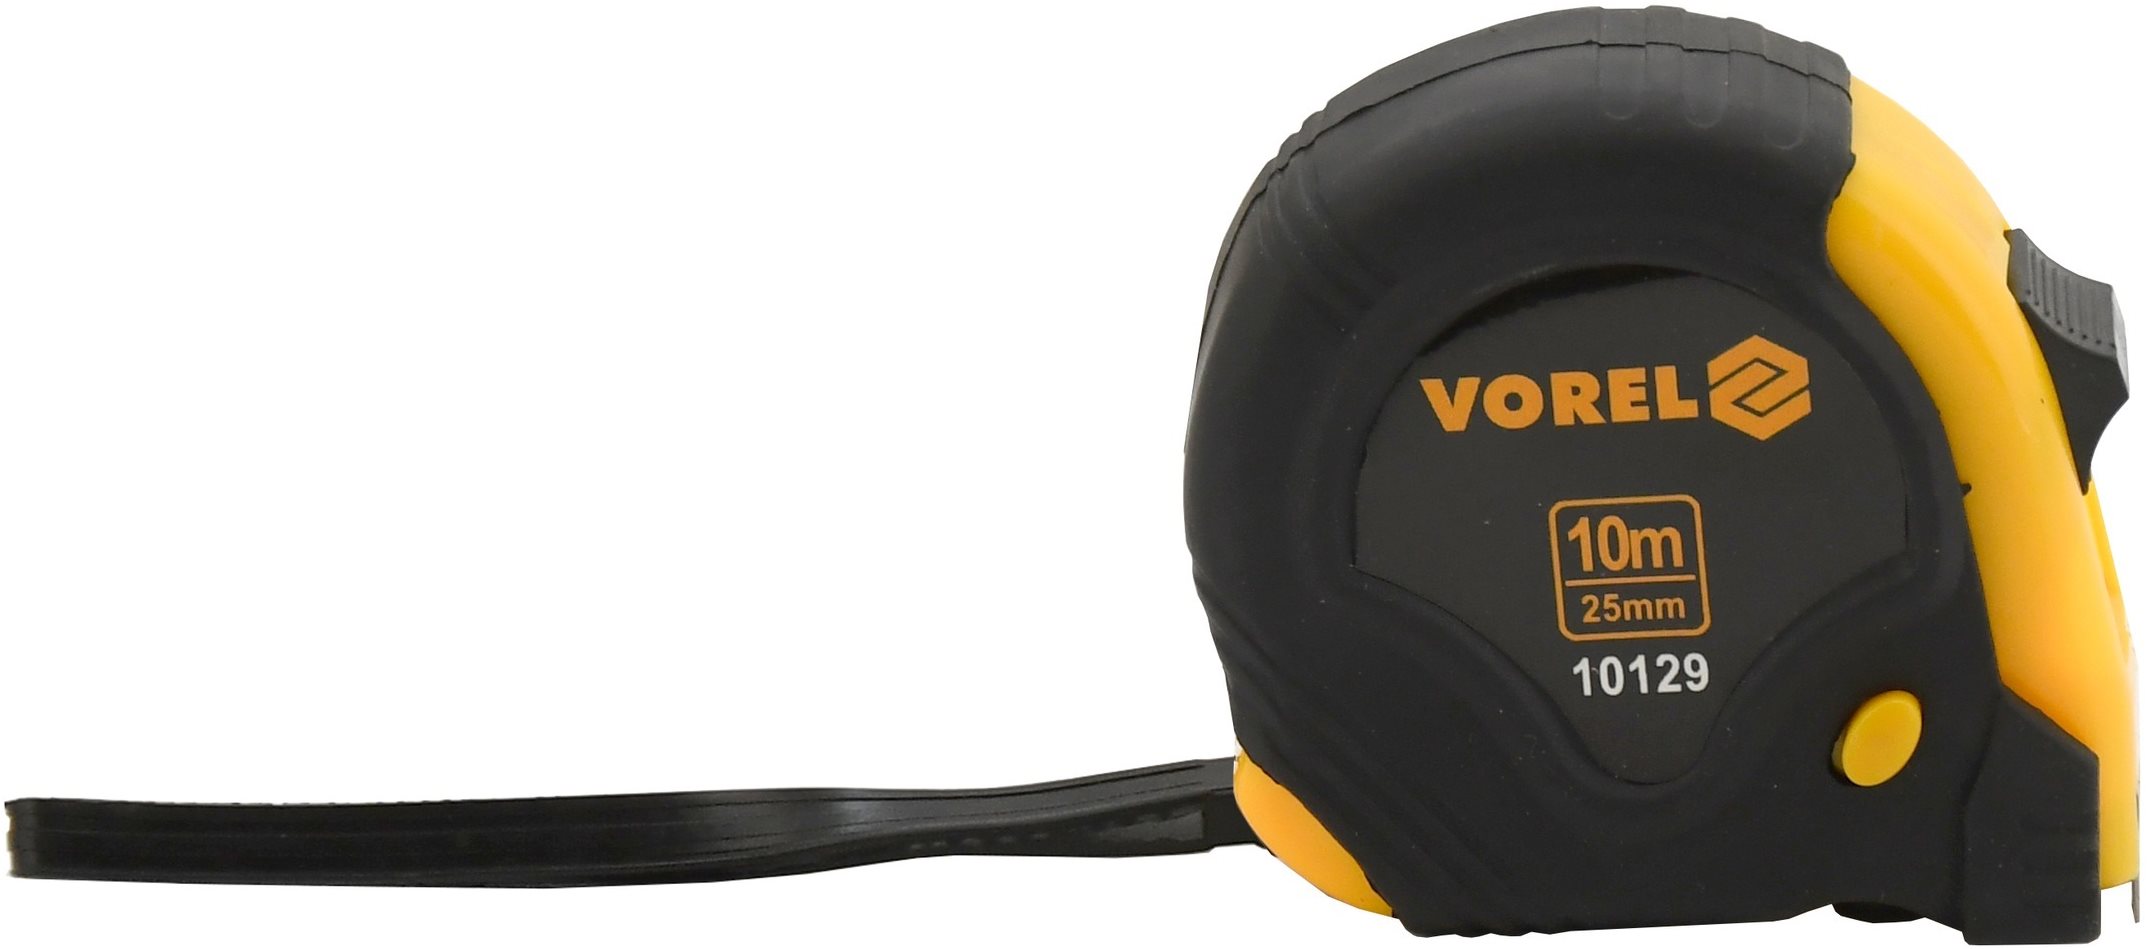 Mérőszalag Vorel mérőszalag, 10 m x 25 mm, sárga - fekete színű